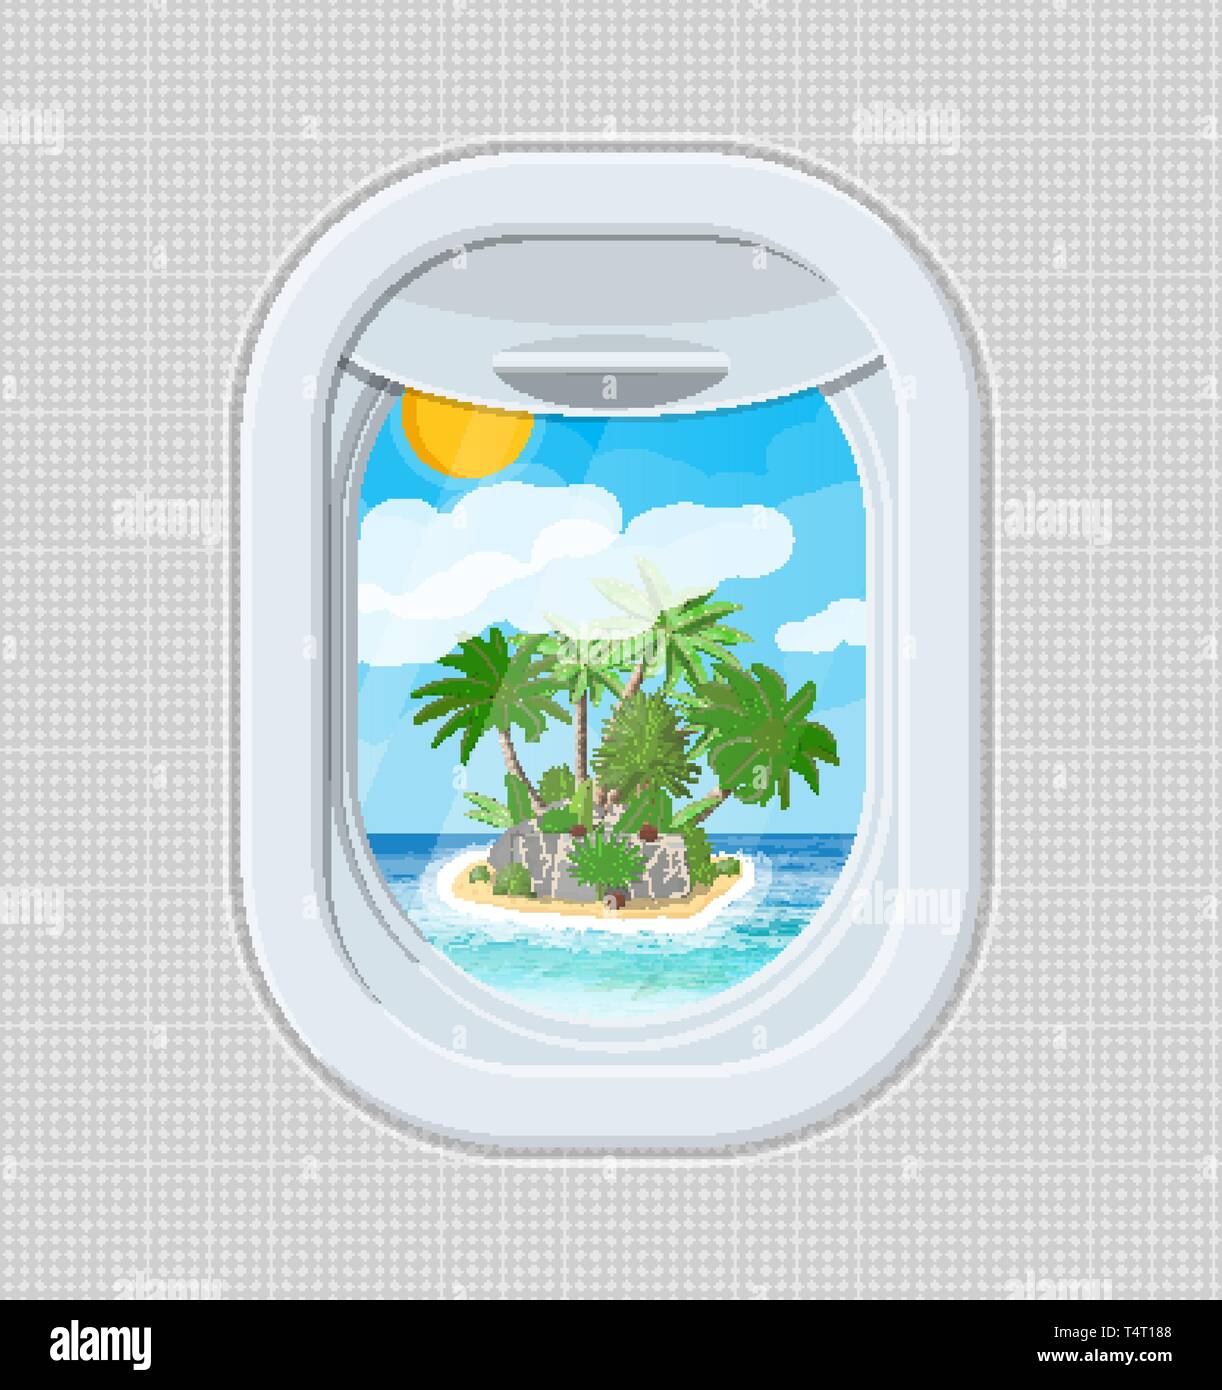 Fenêtre à partir de l'intérieur de l'avion. Hublot de l'avion de l'obturateur. Île tropicale palmier dans l'océan. Voyage de l'air ou de vacances. Vector illustrat Illustration de Vecteur